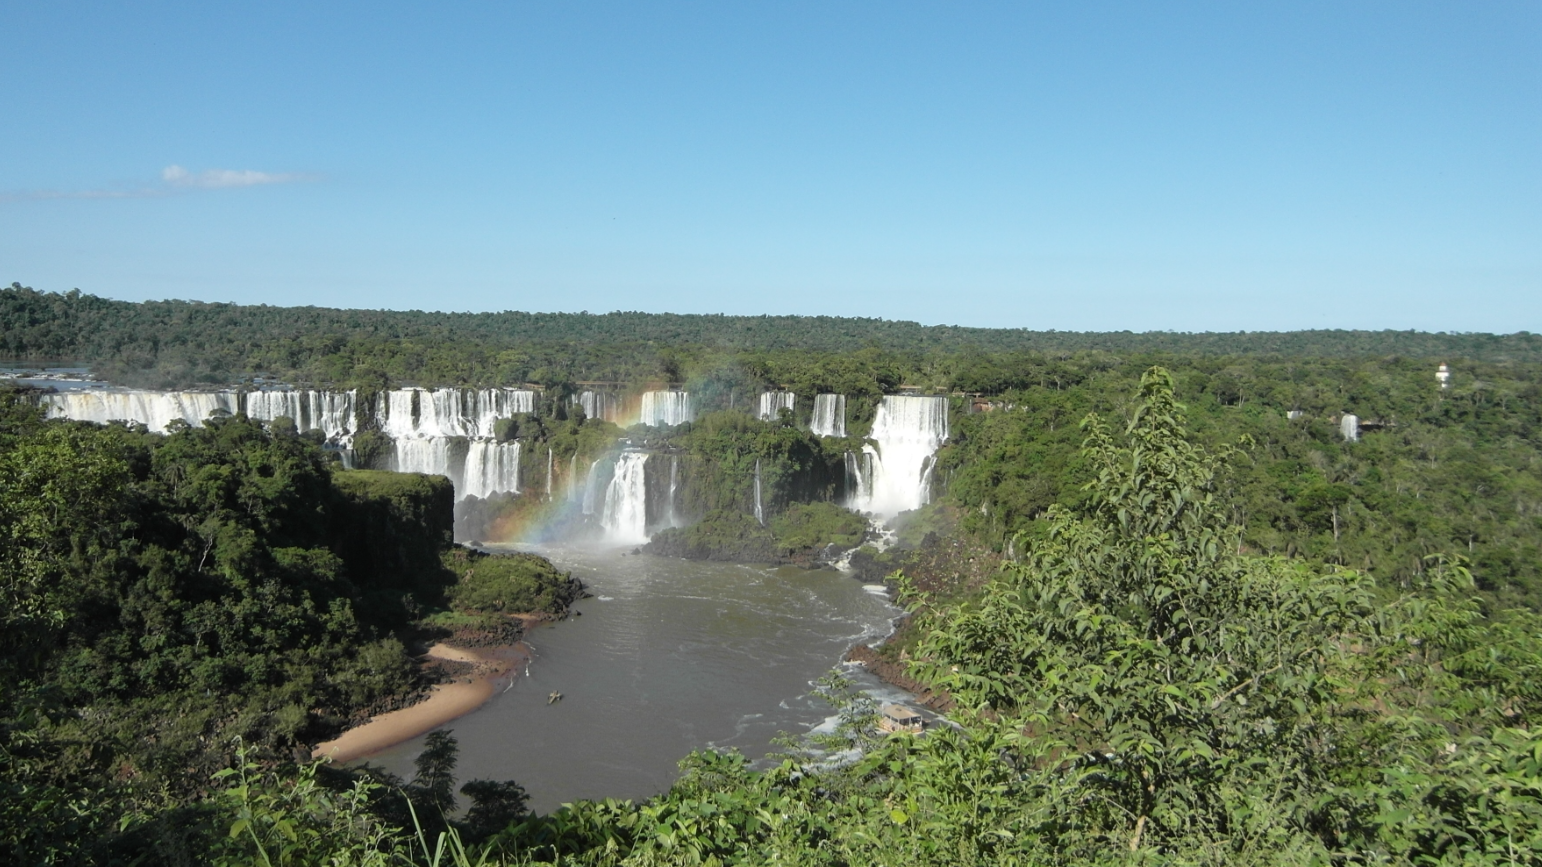 巴西旅游局介绍自然奇景 宣传对华友好旅游服务政策